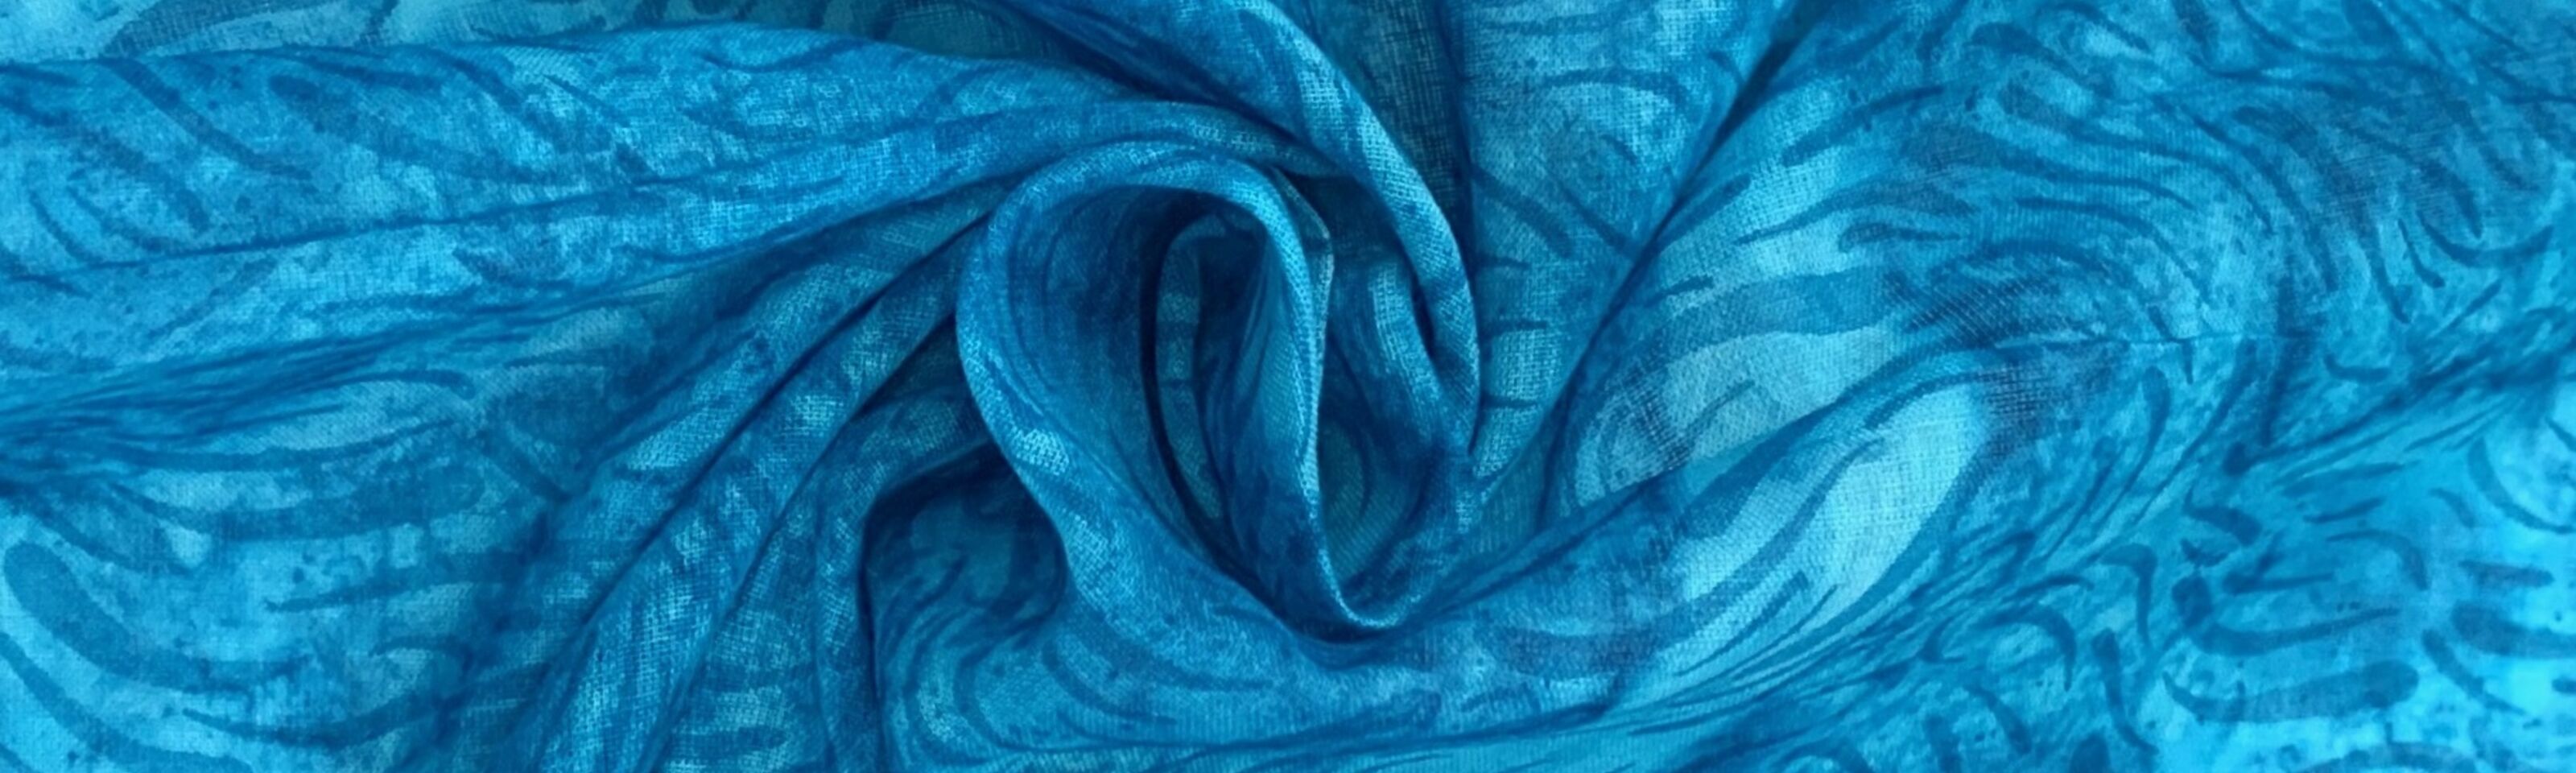 Barik - Voile - Turquoise - folded